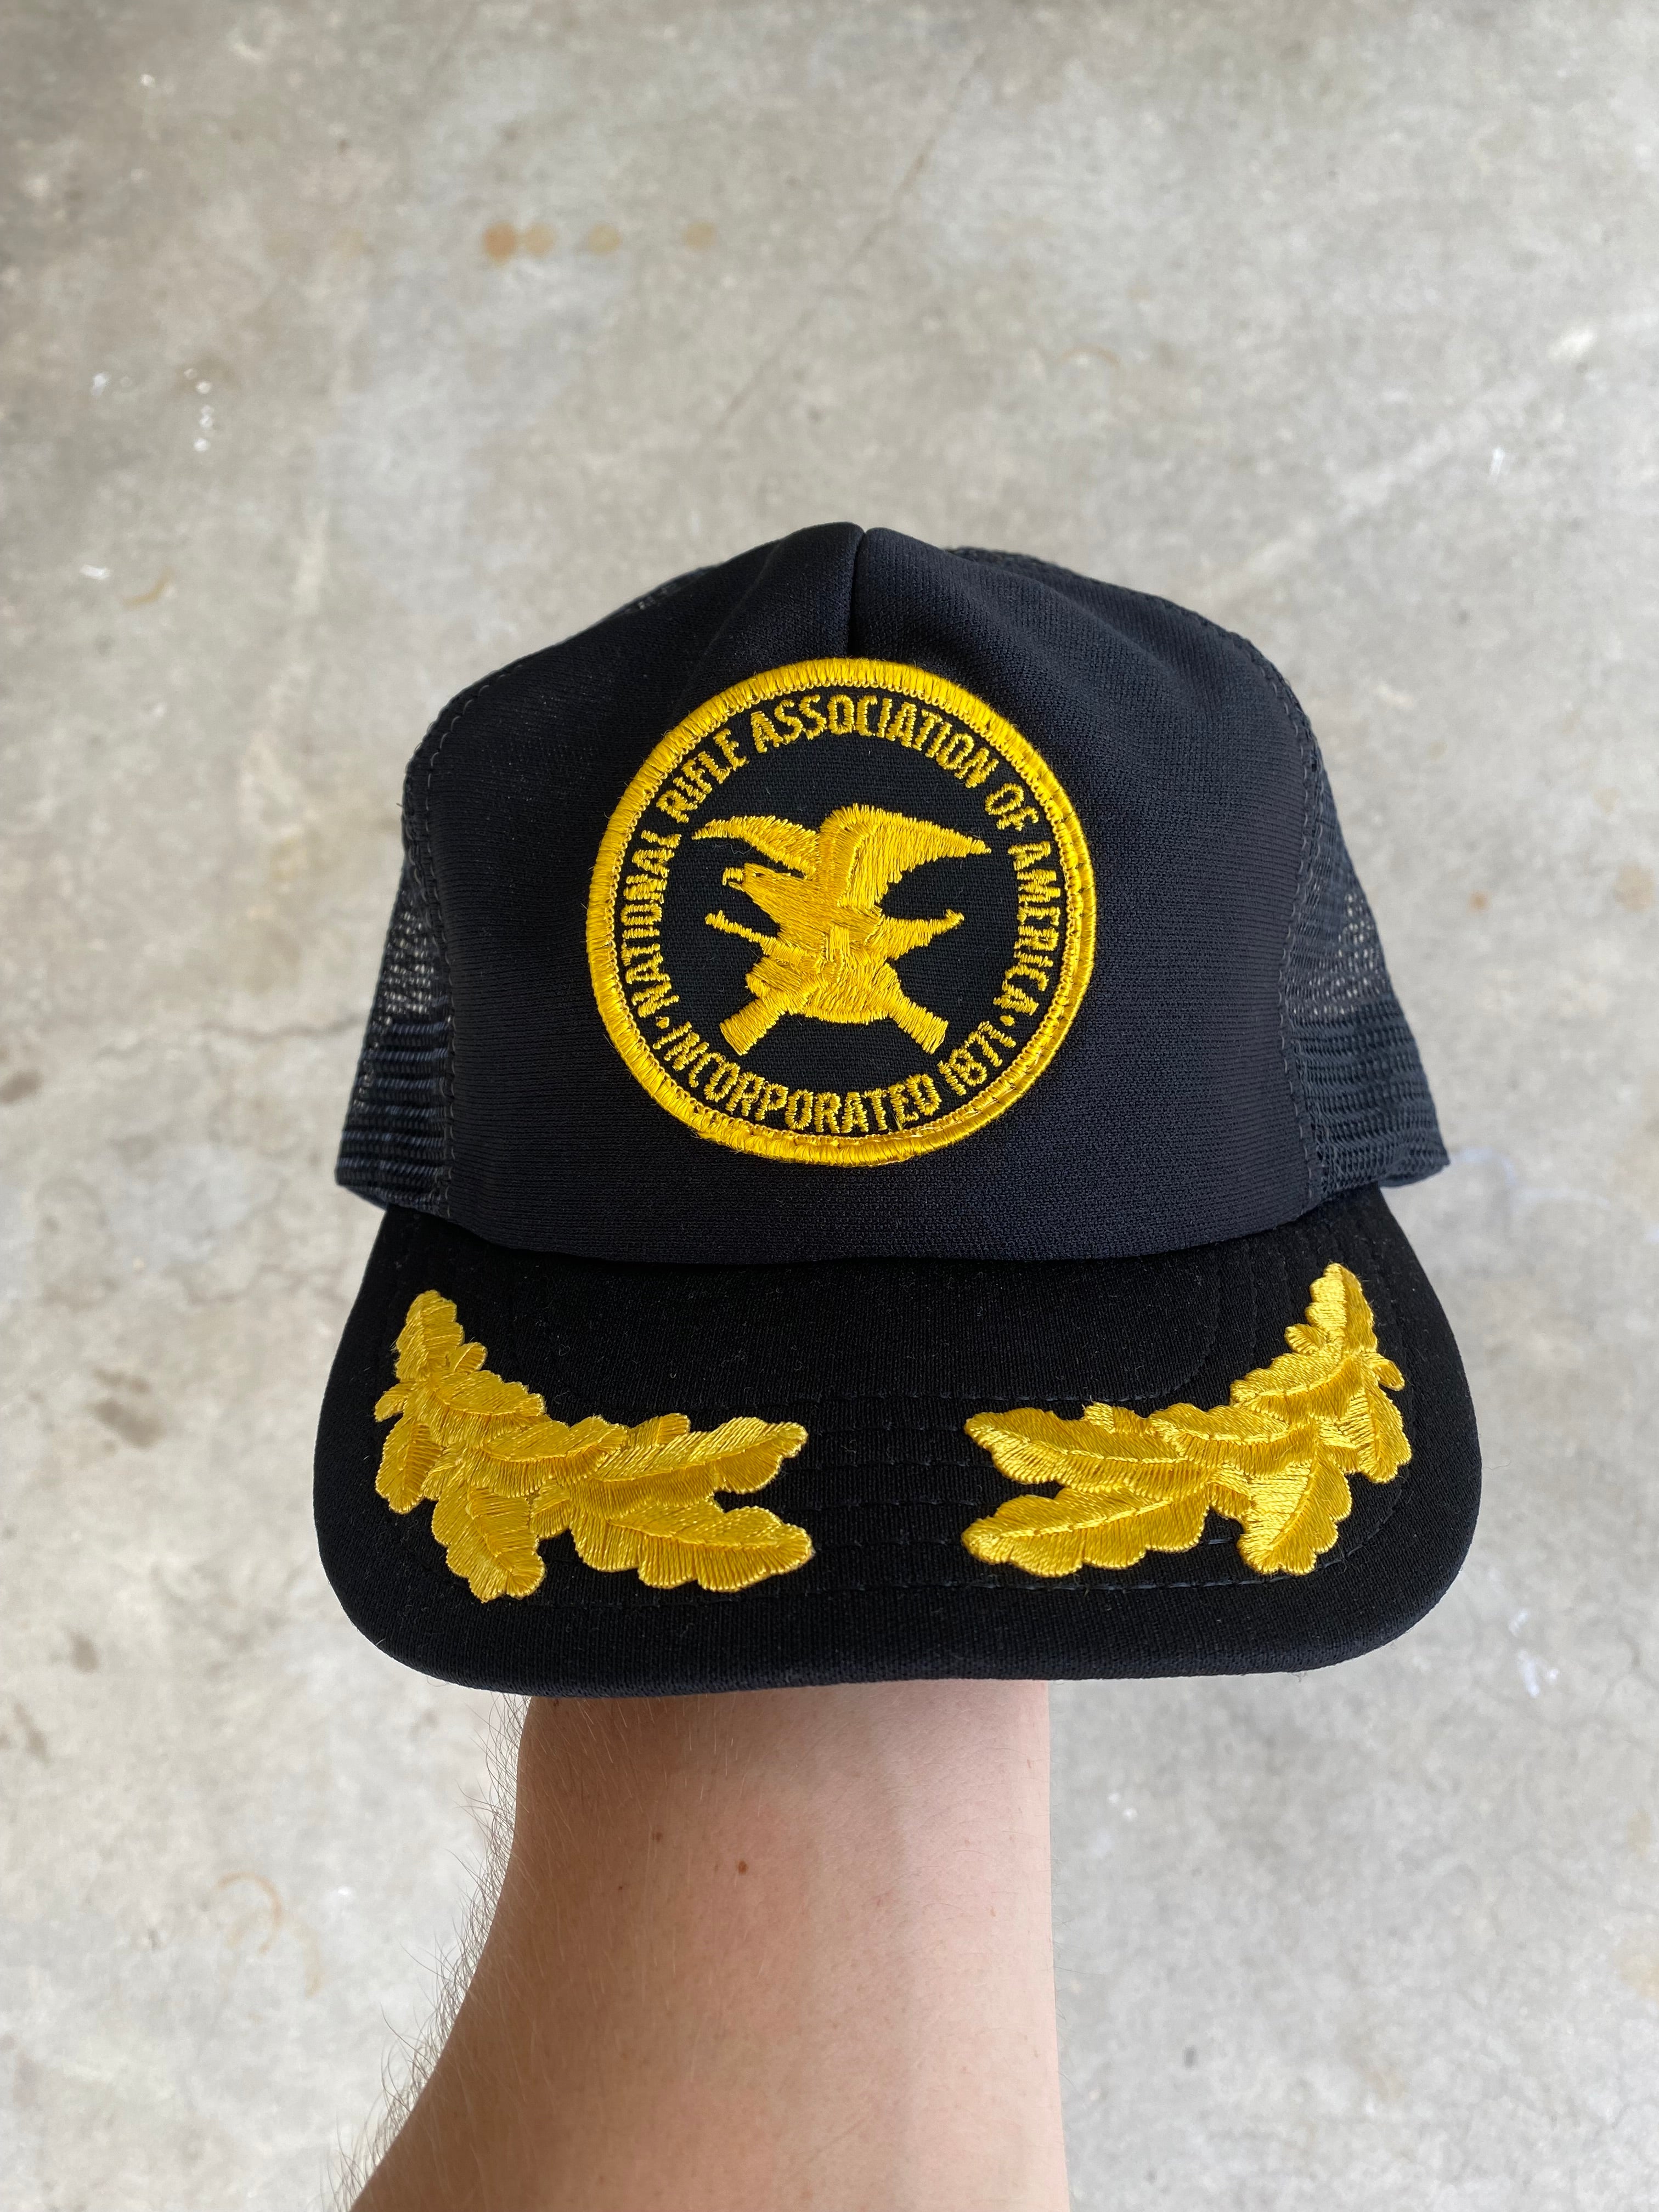 1980s NRA Trucker Hat